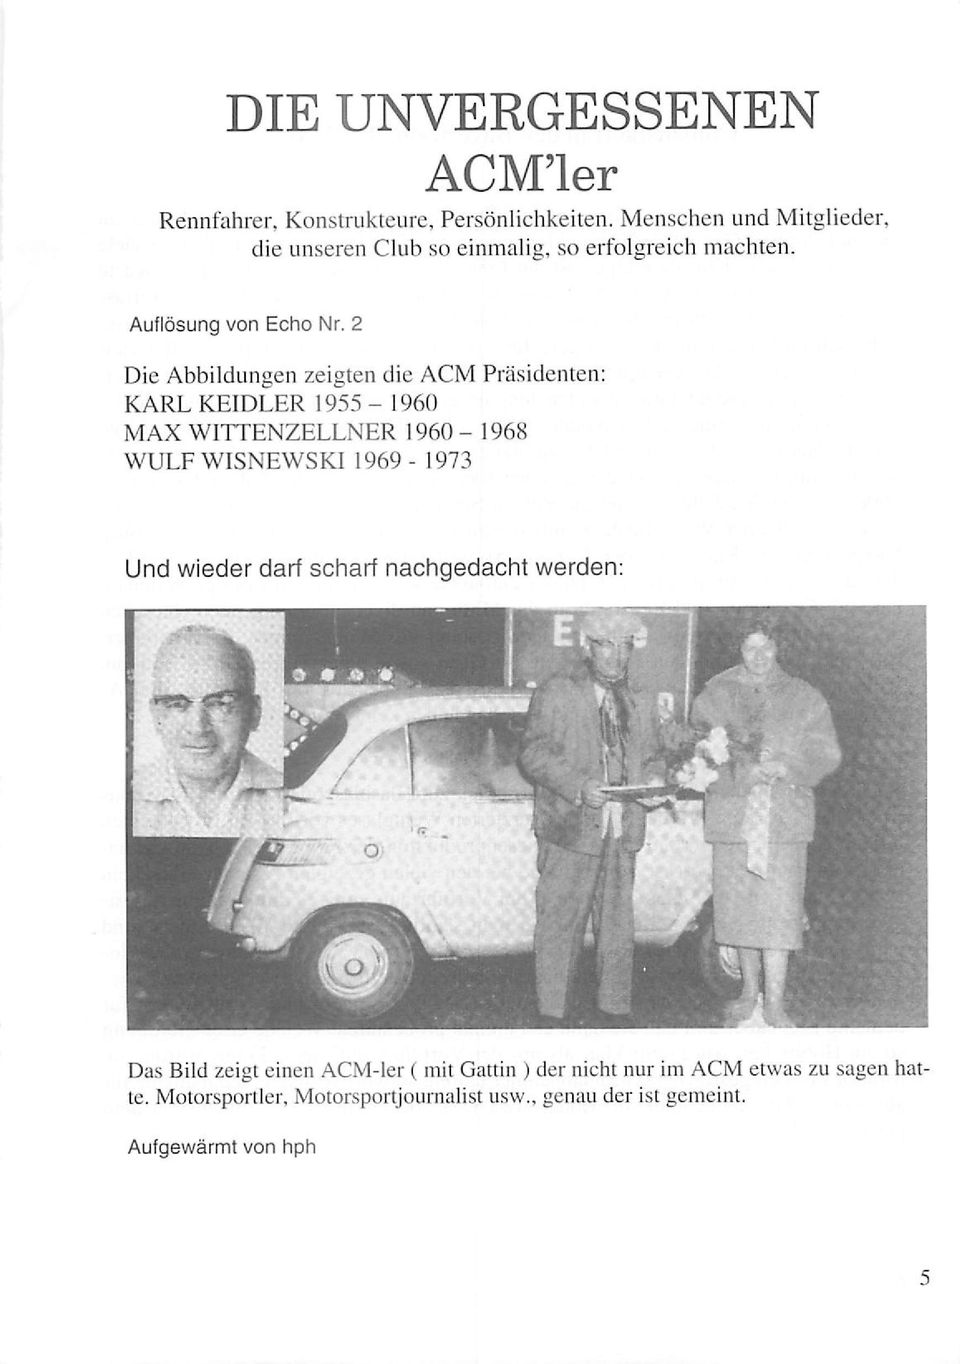 2 Die Abbildungen zeigten die ACM Präsidenten: KARL KEIDLER 1955-1960 MAX WITTENZELLNER 1960-1968 WULF WISNEWSKI 1969-1973 Und